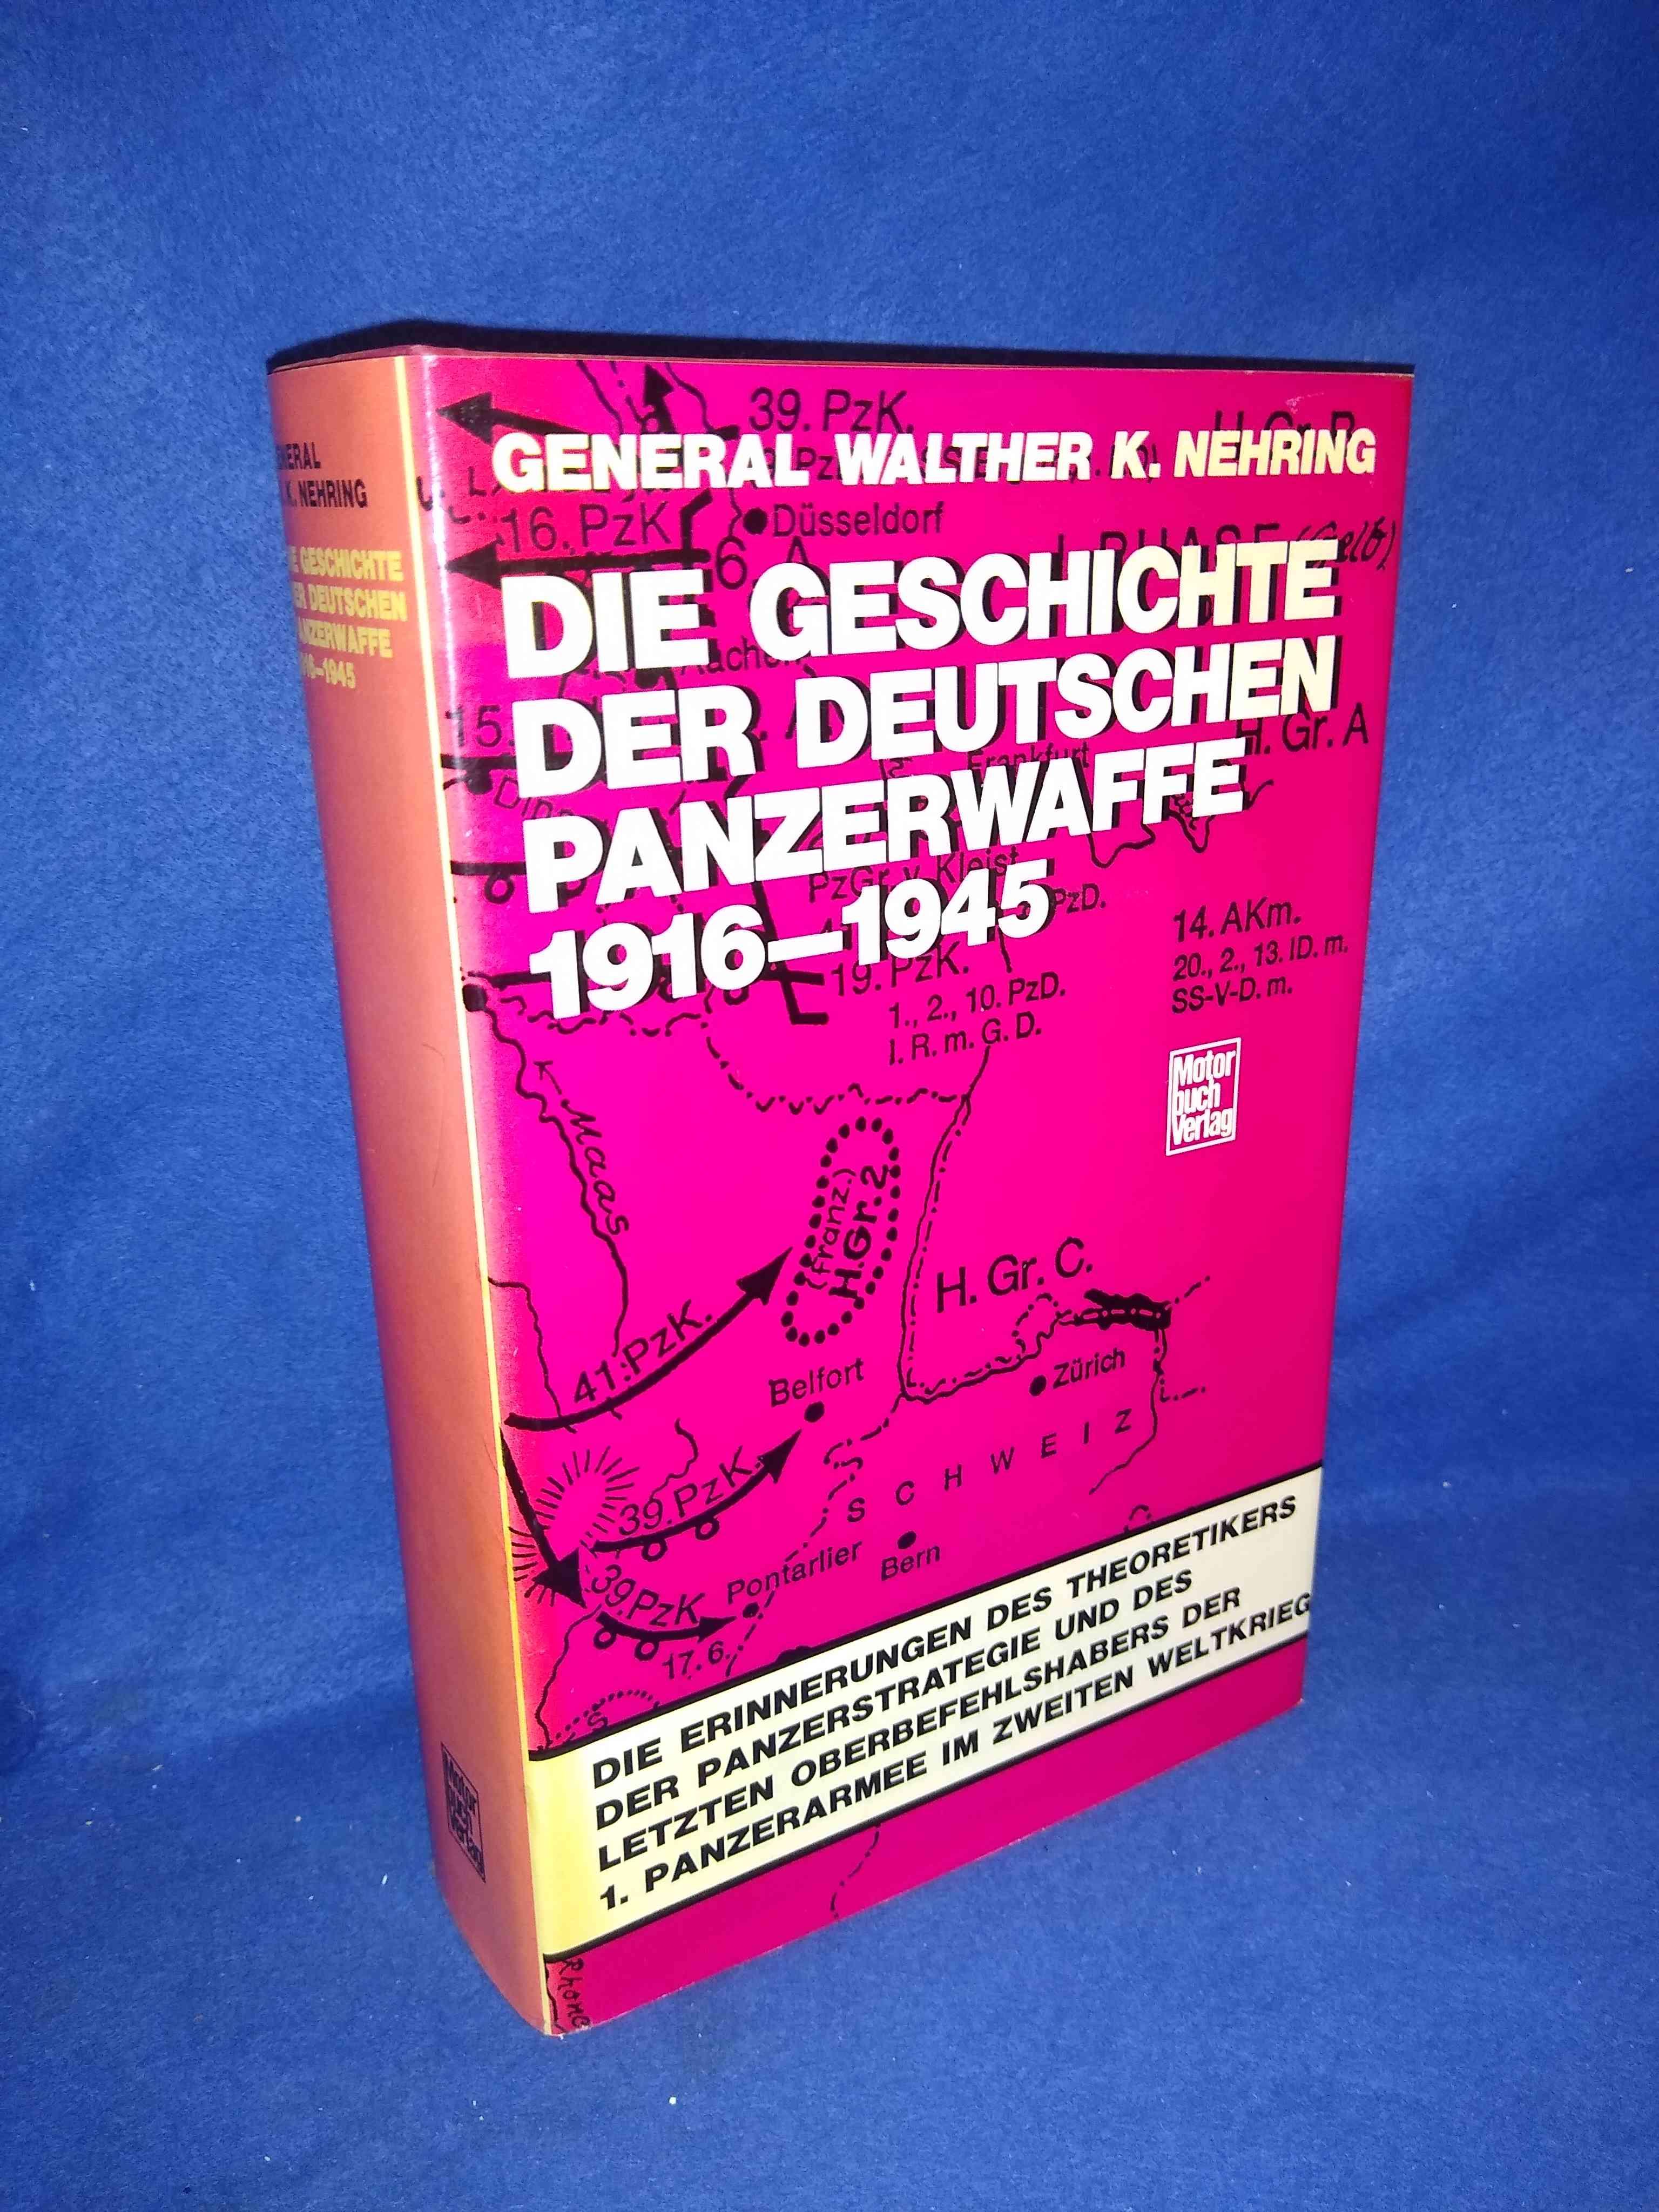 Die Geschichte der deutschen Panzerwaffe 1916-1945. 